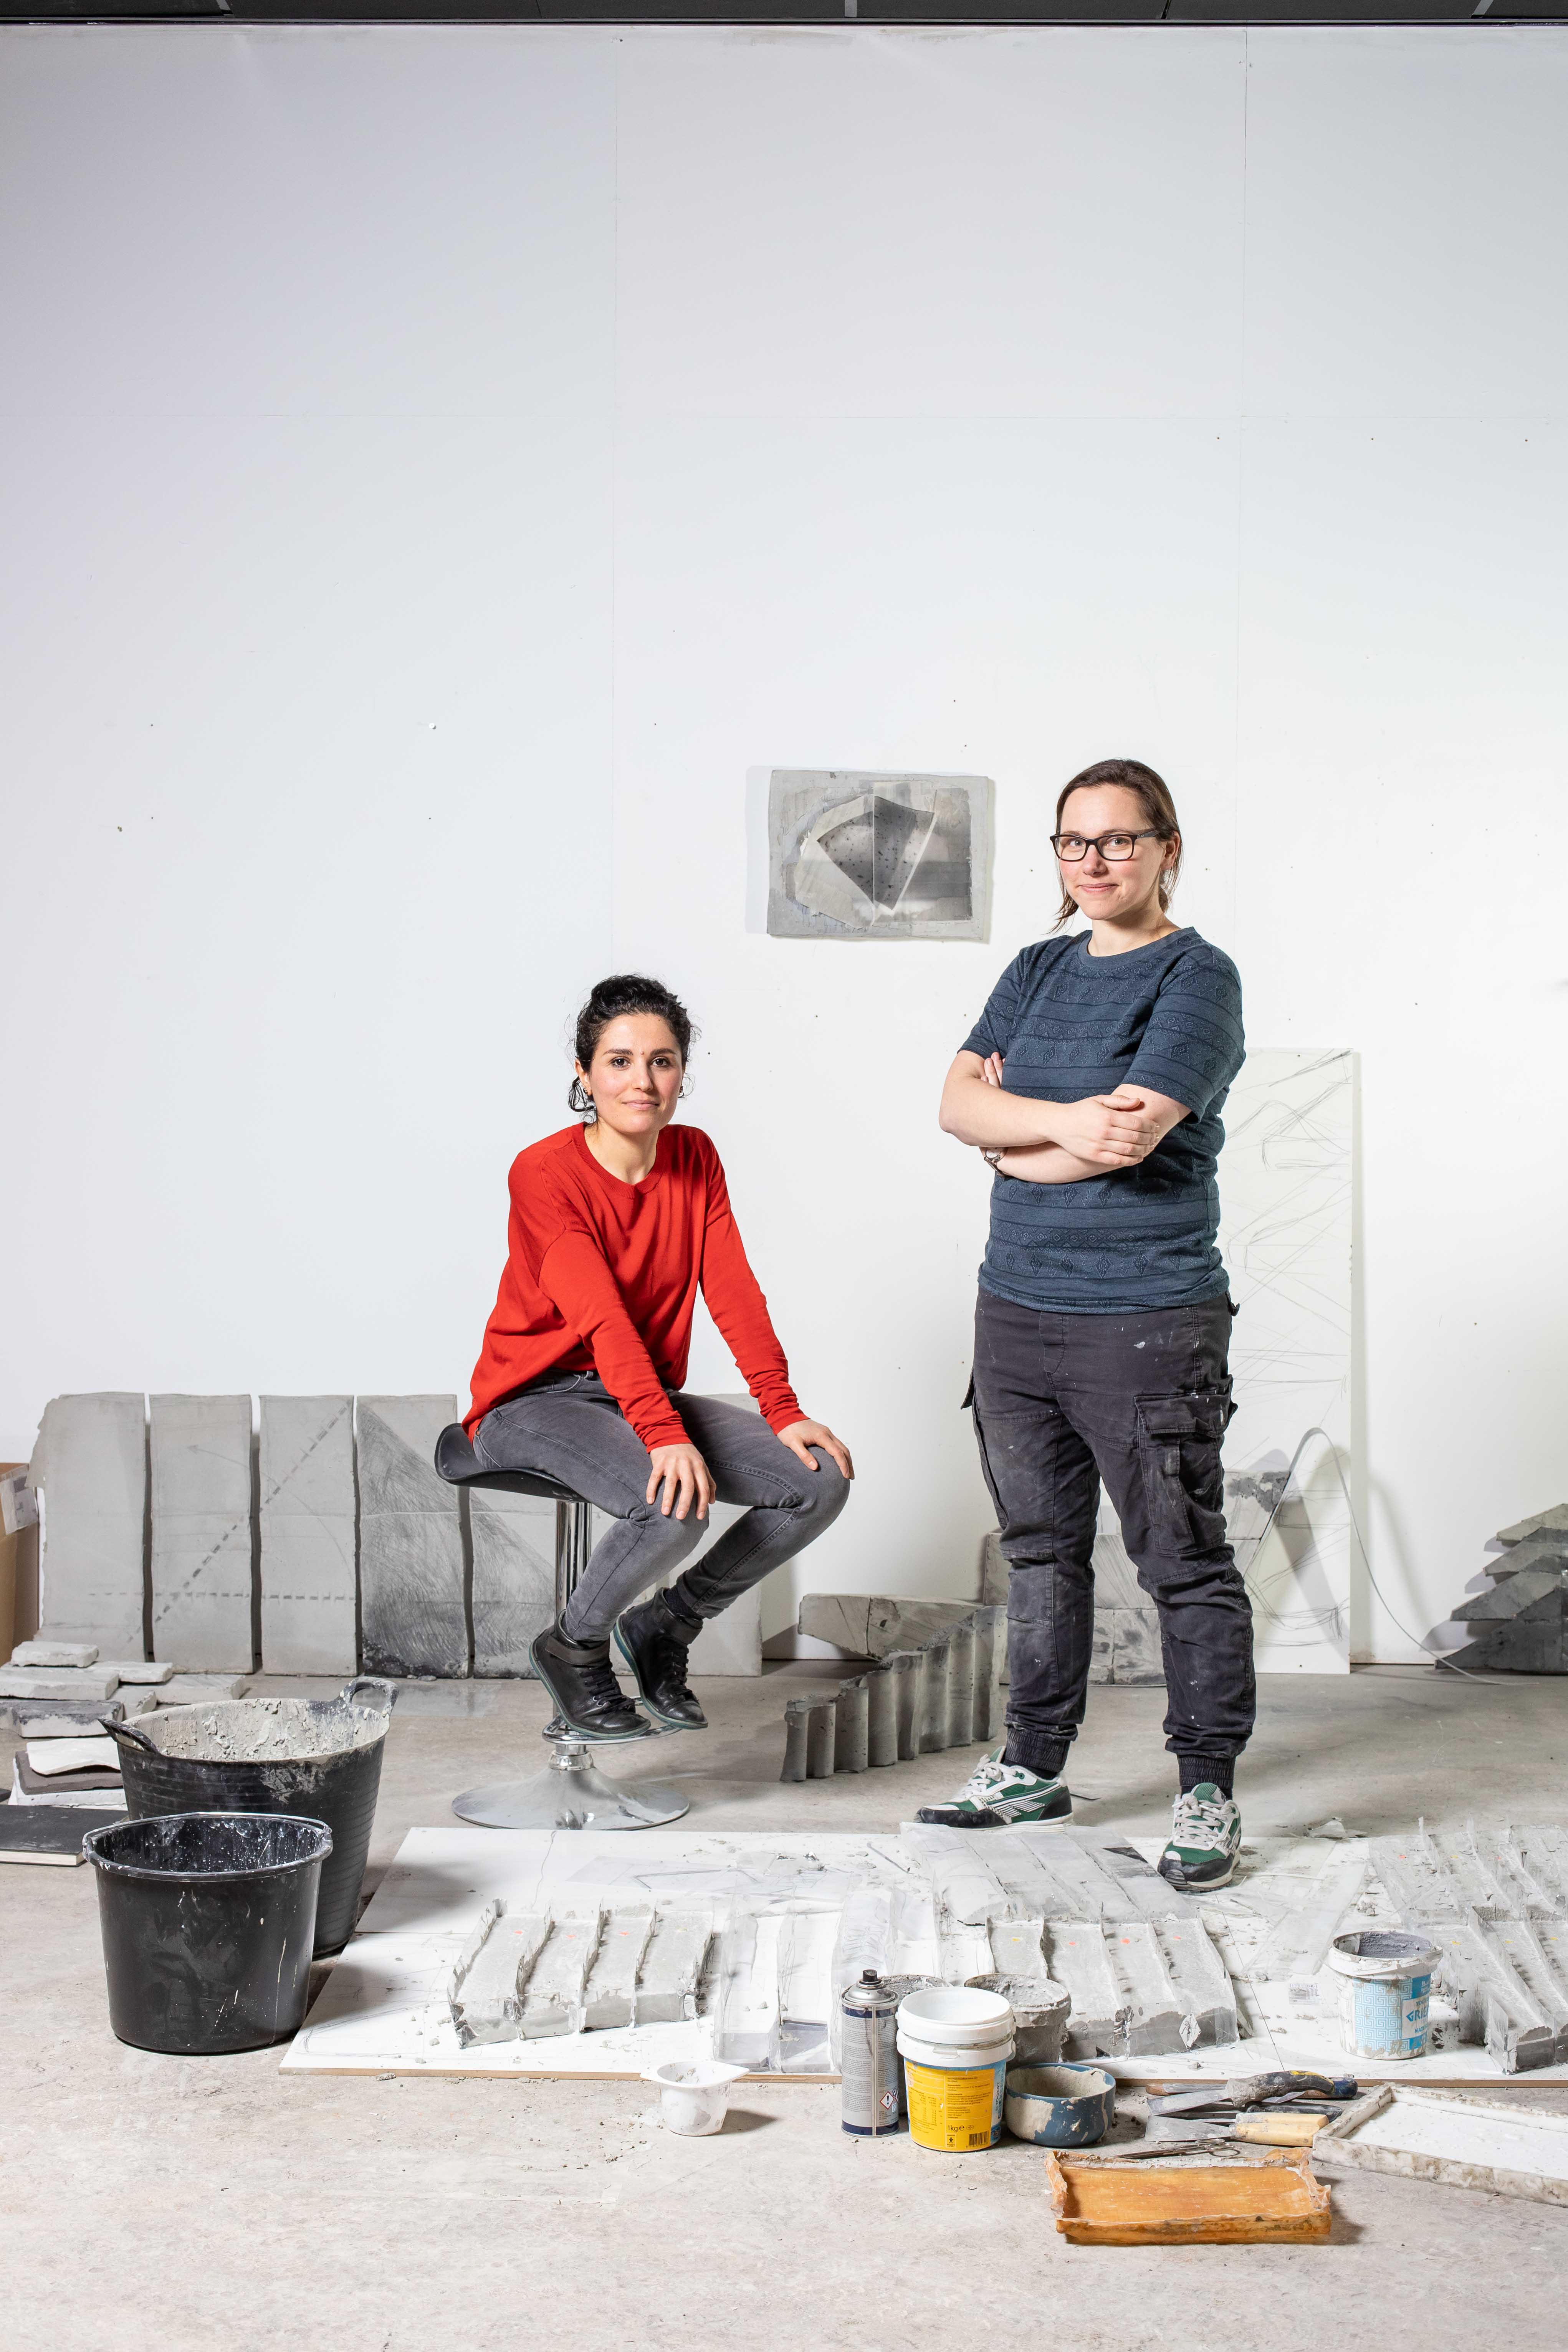 Natalia Ossef zittend op een krukje en Maaike Kramer staand in het atelier van Maaike met betonnen objecten en gereedschap op de vloer rondom hen